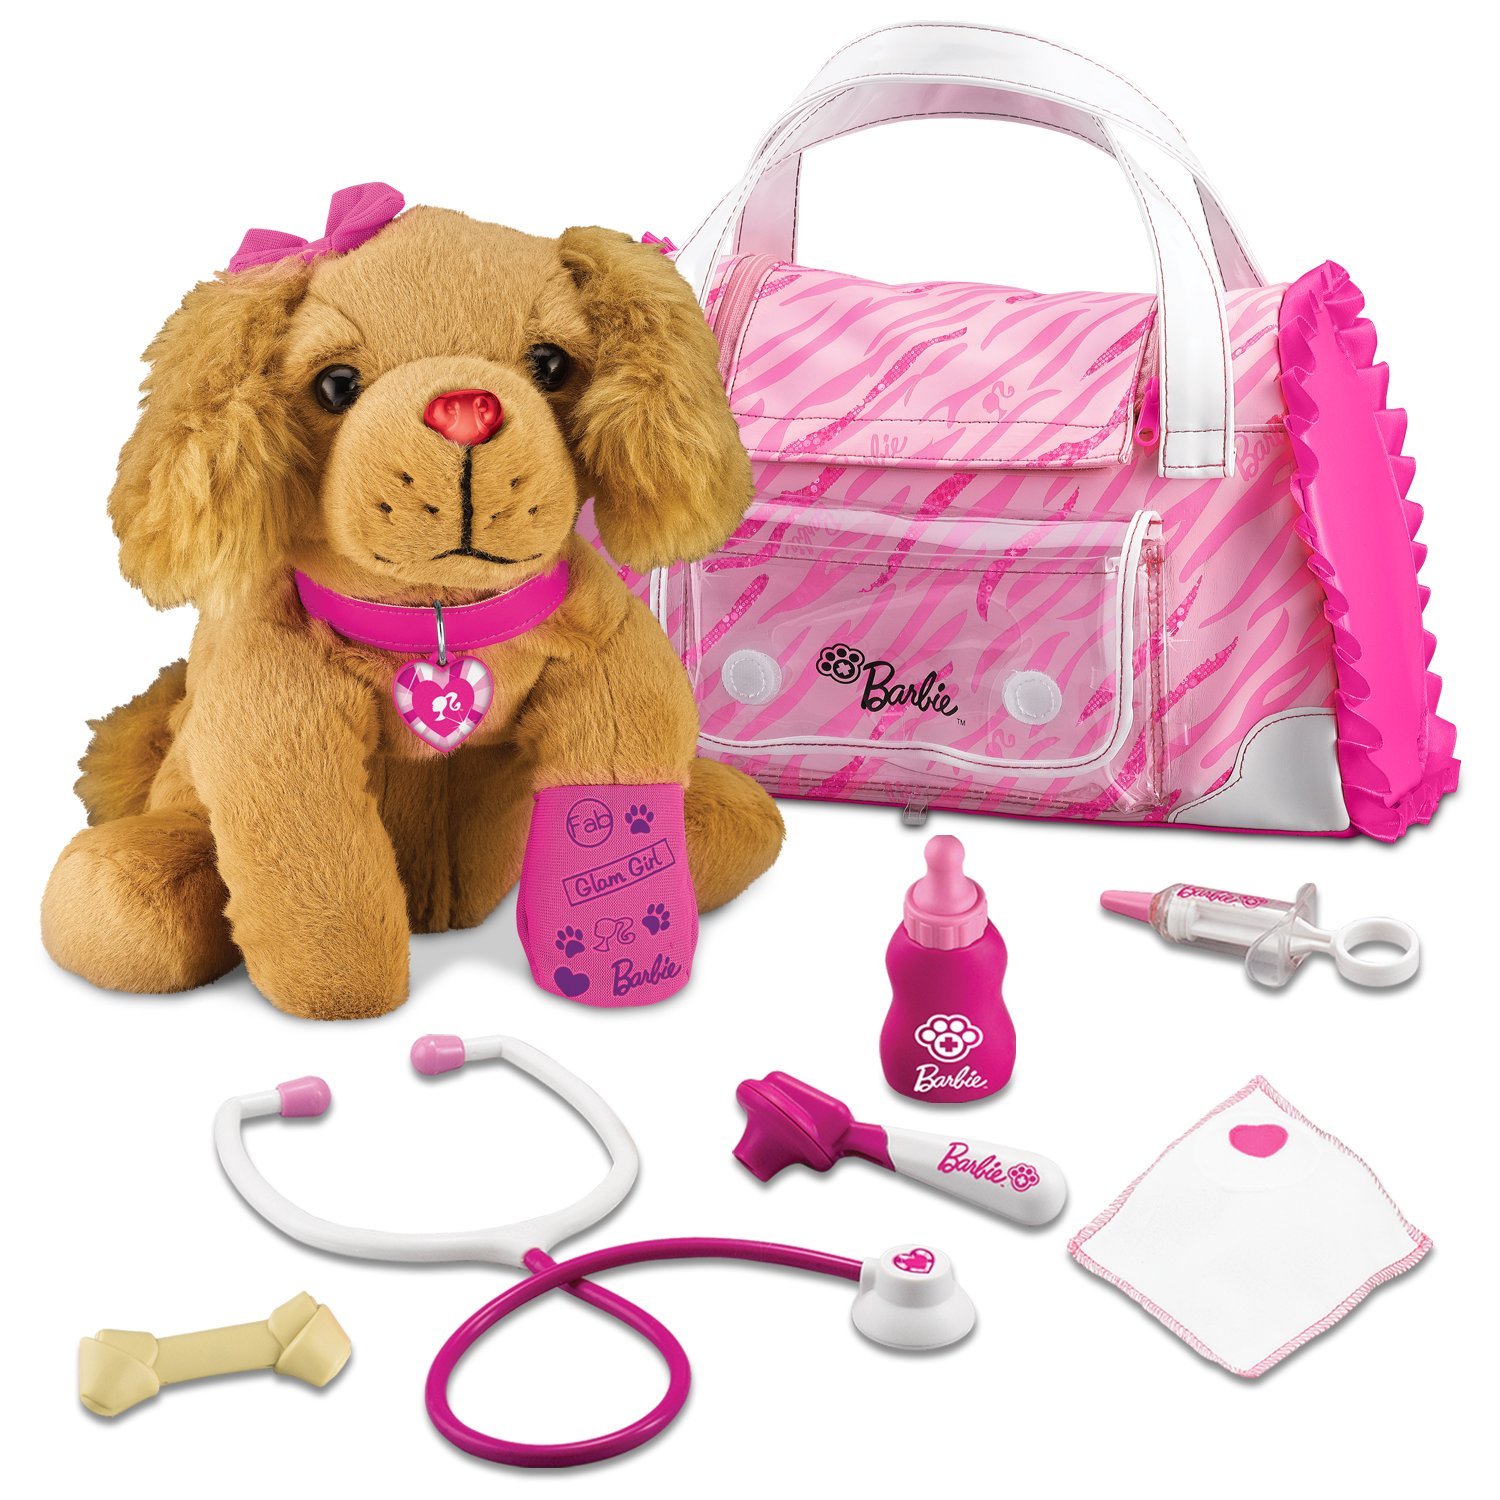 Barbie Hug n Heal Pet Vet Review - Gift Idea For Girls & My Little 